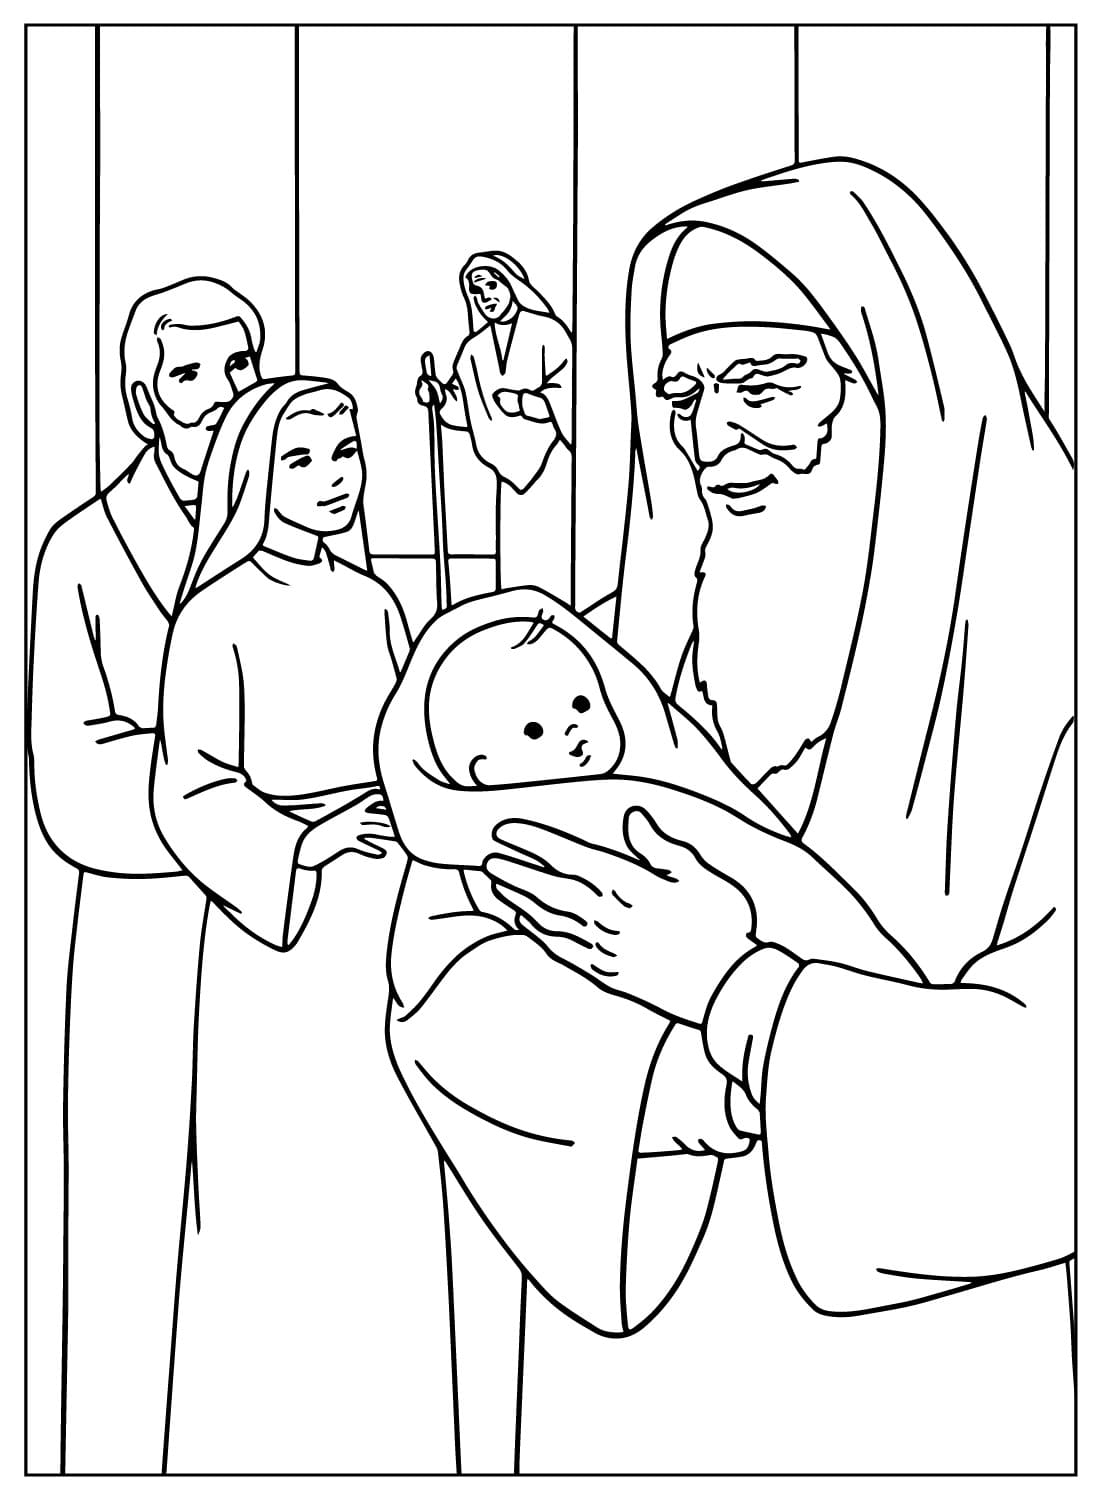 玛丽和圣约瑟夫在耶稣圣殿中介绍耶稣